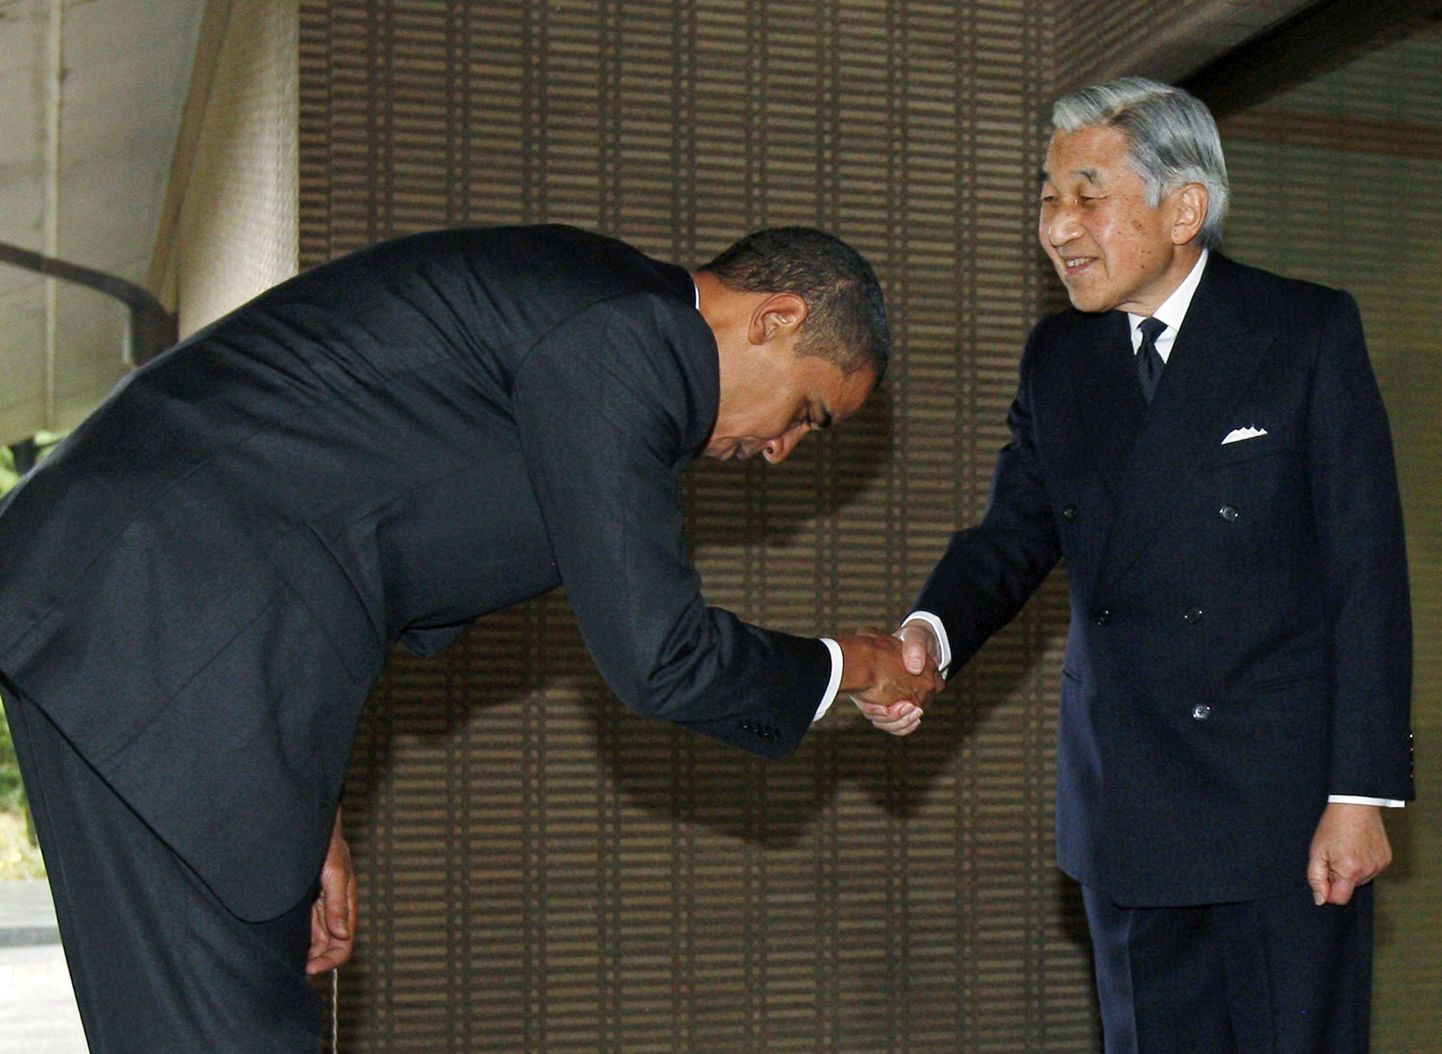 Ühendriikide president Barack Obama (vasakul) ja Jaapani keiser Akihito.